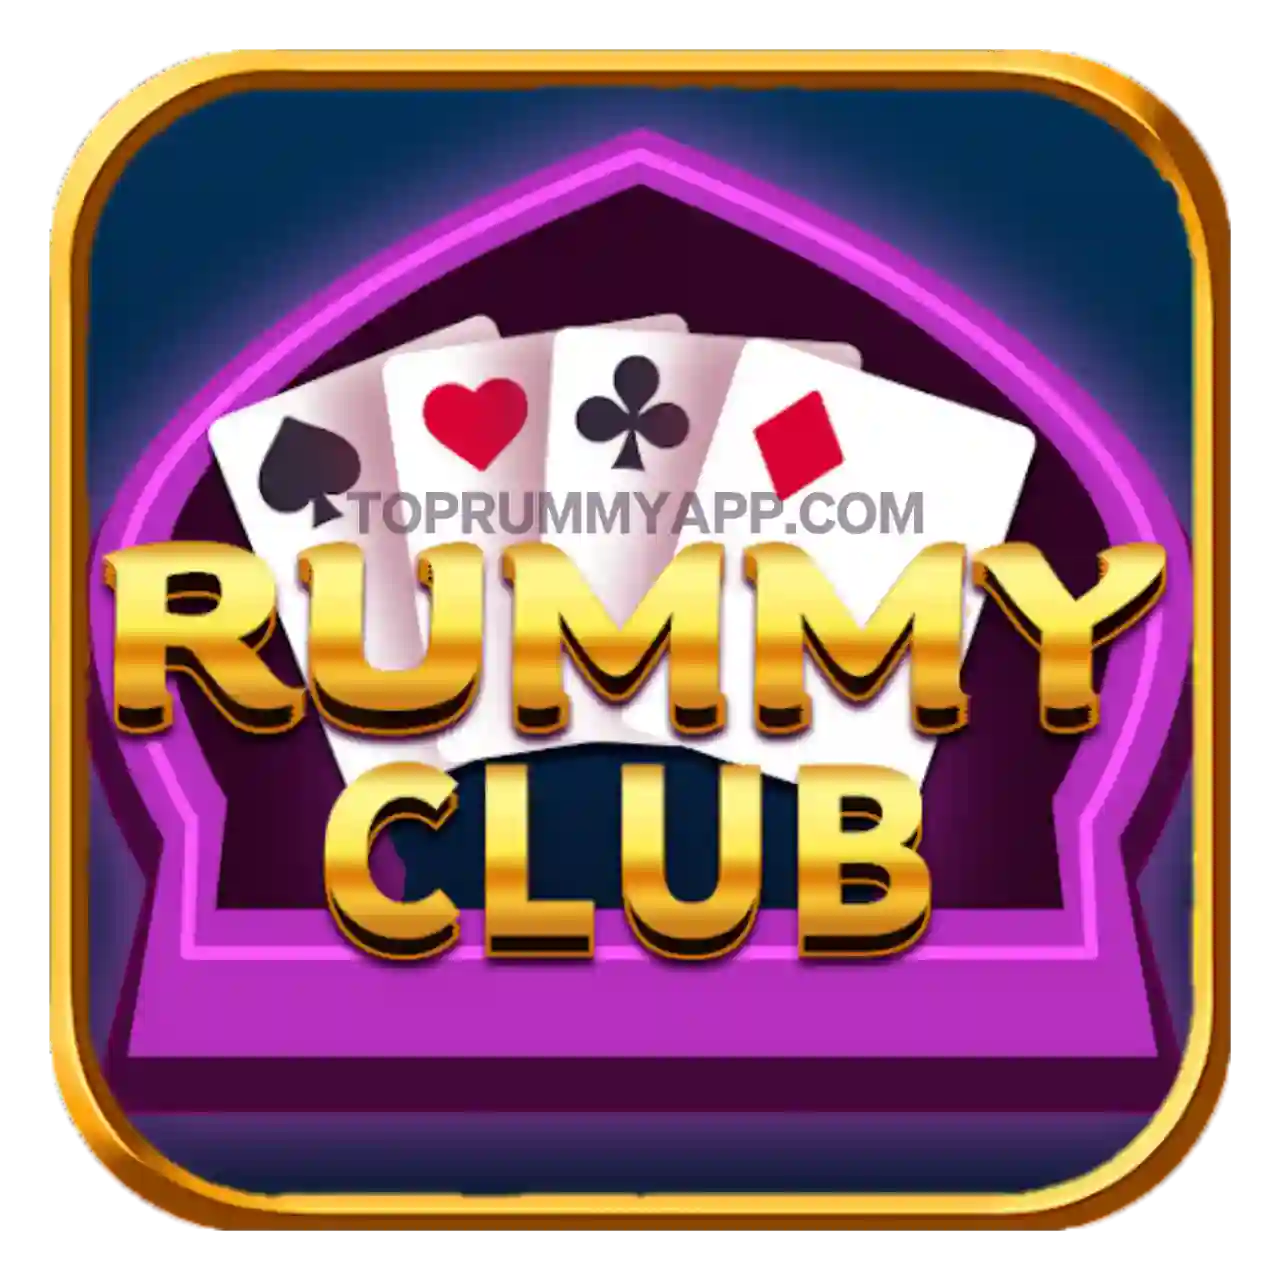 Rummy Club Mod Apk Rummy Apk App